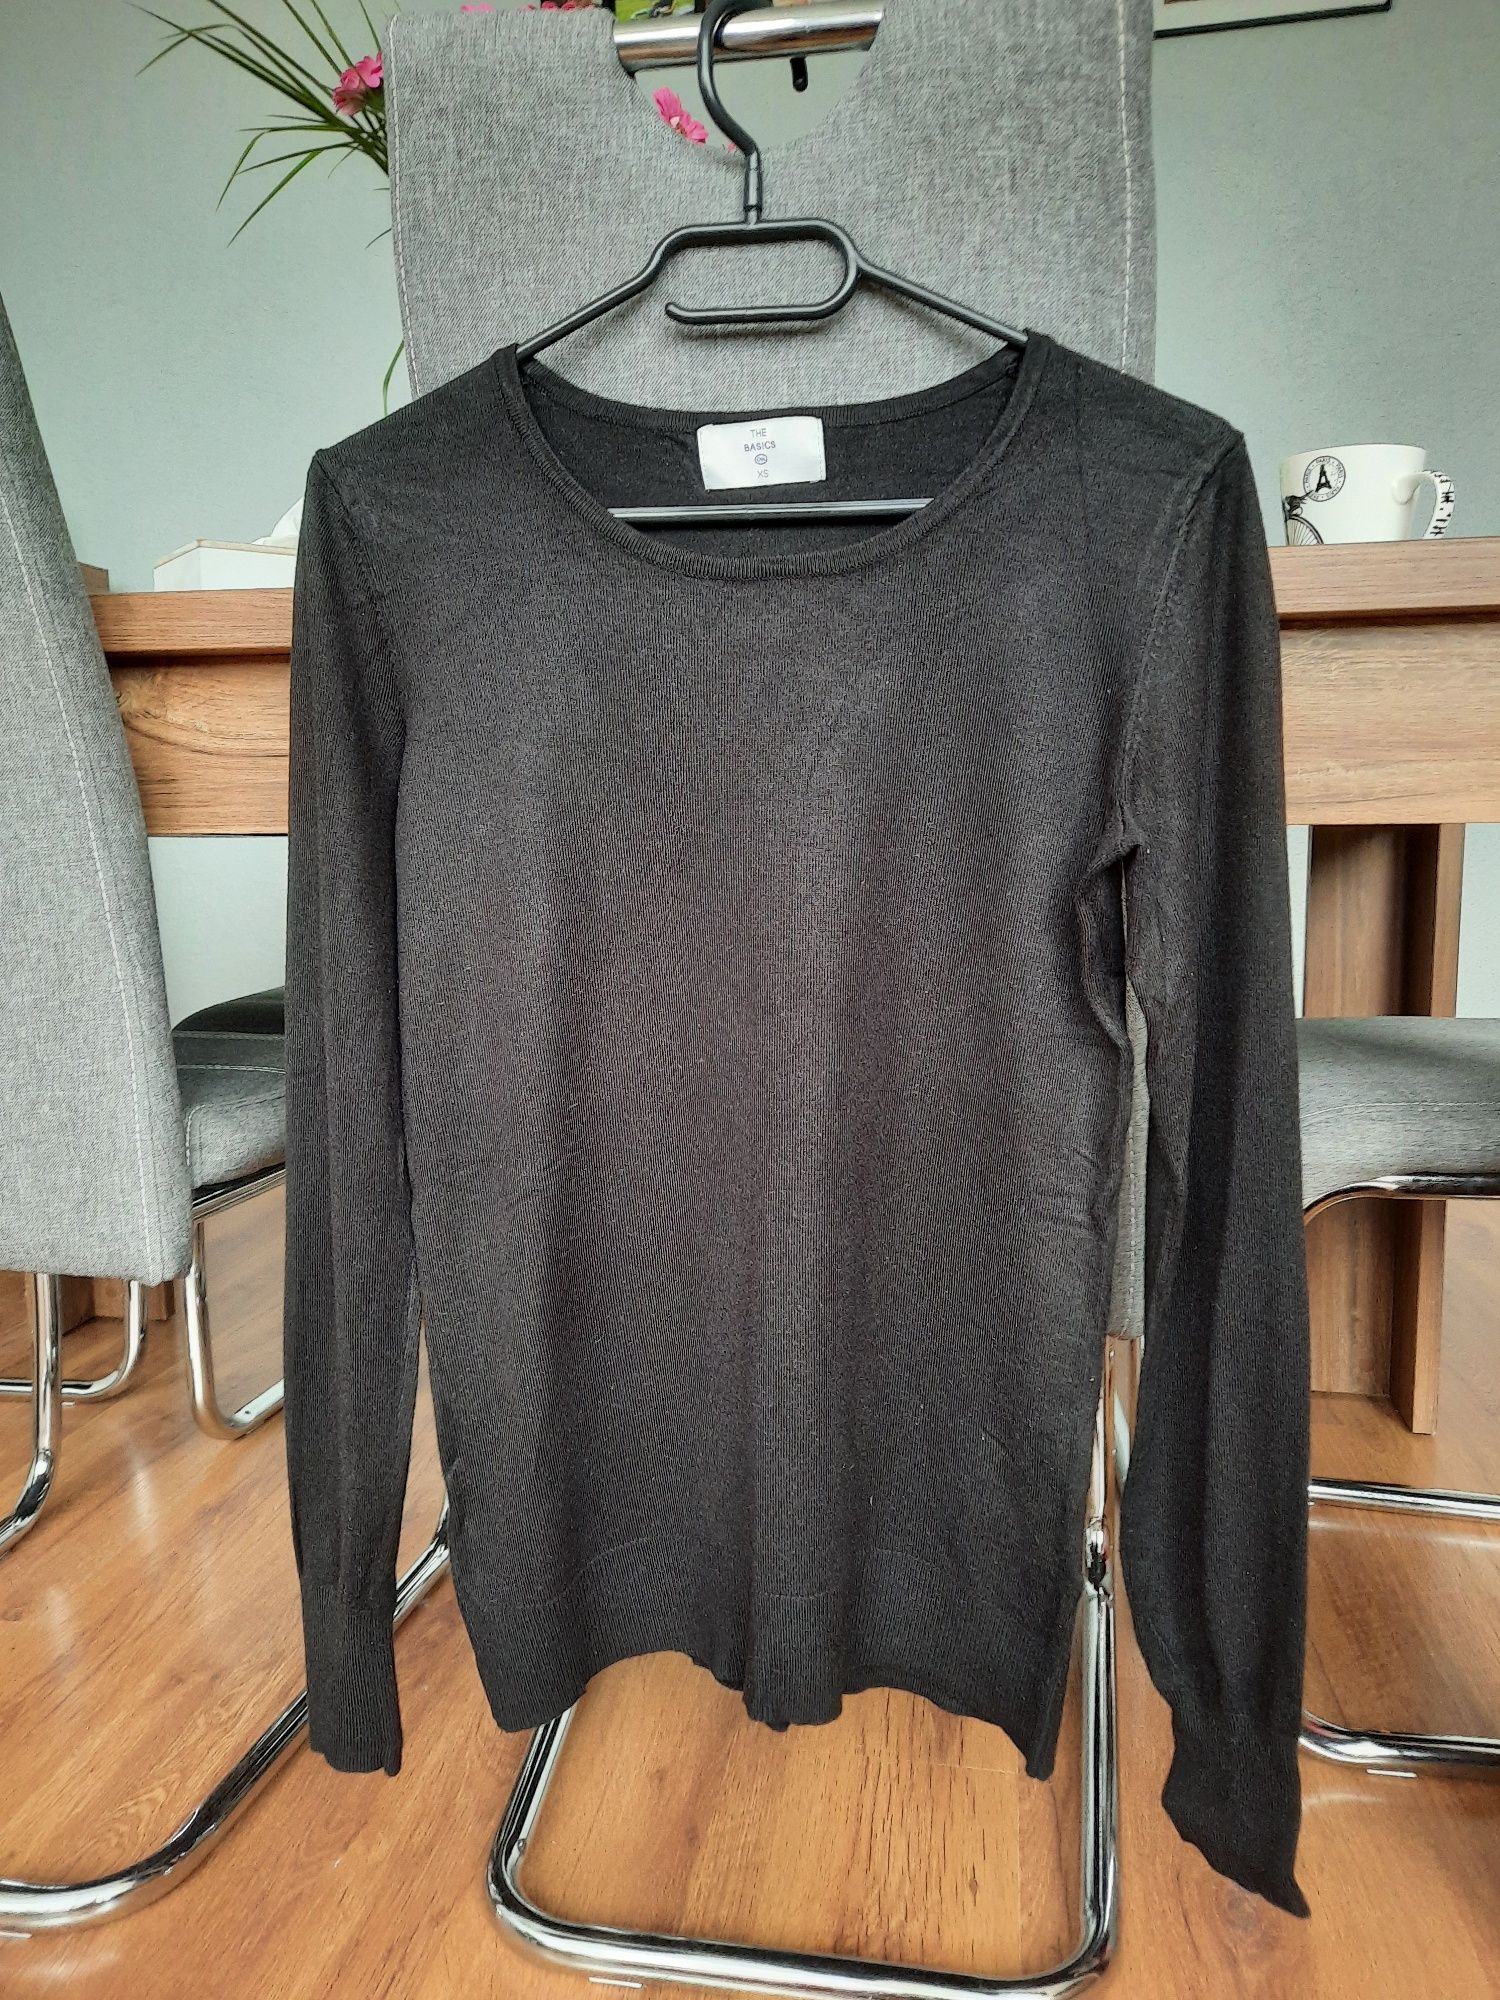 Czarny sweterek damski, rozmiar S/M